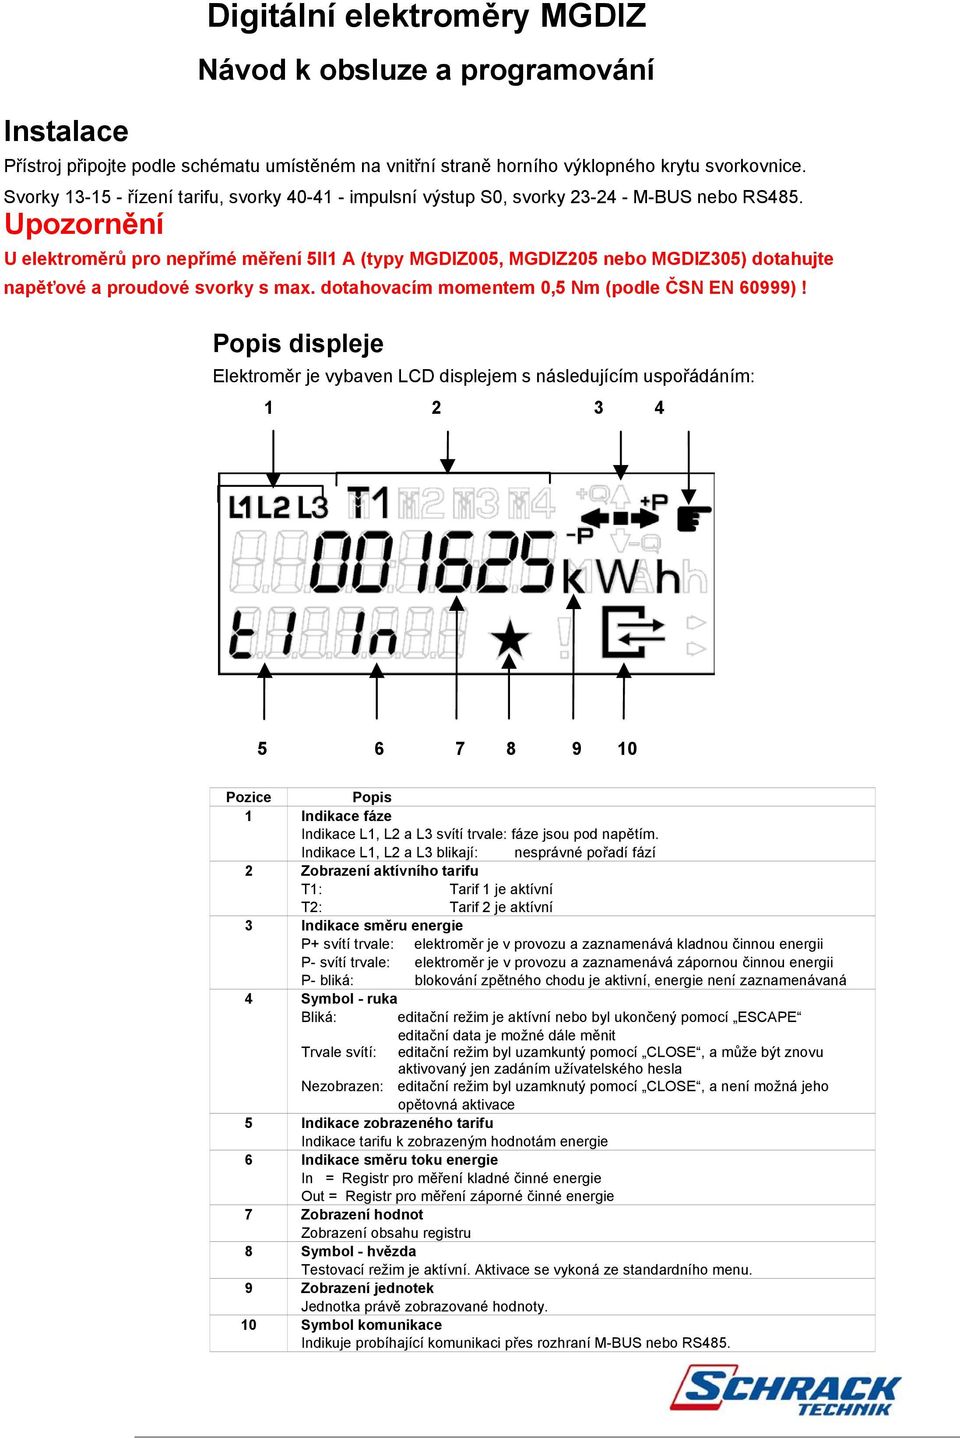 Upozornění U elektroměrů pro nepřímé měření 5II1 A (typy MGDIZ005, MGDIZ205 MGDIZ305) dotahujte napěťové a proudové svorky s max. dotahovacím momentem 0,5 Nm (podle ČSN EN 60999)!